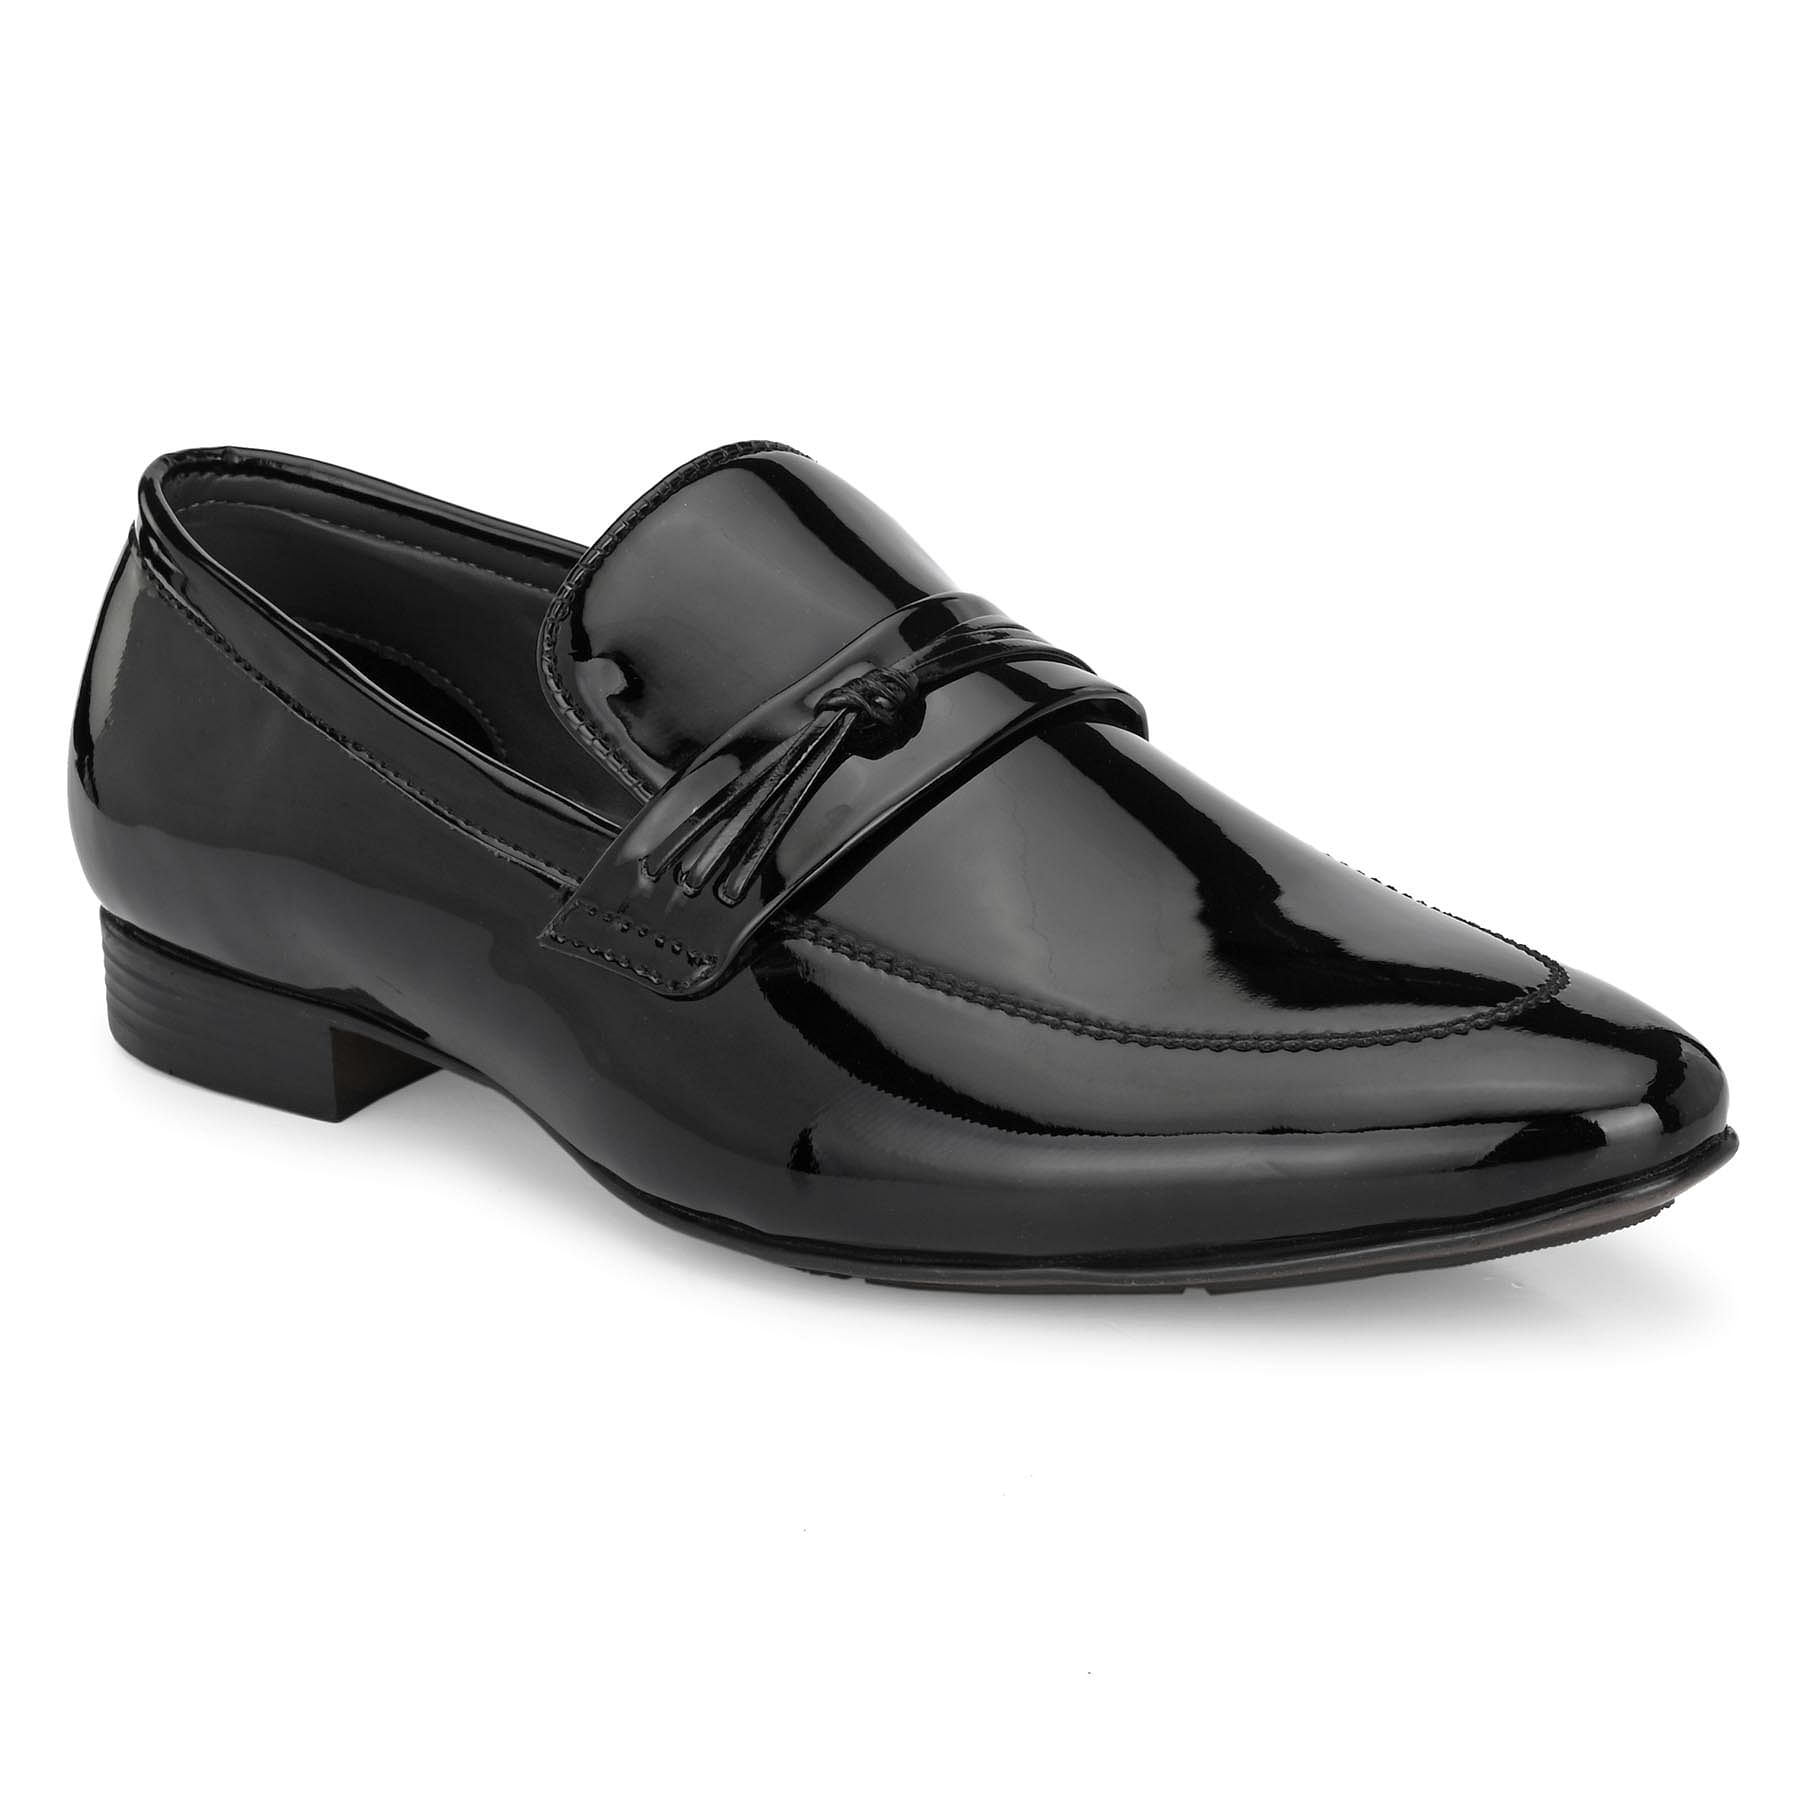 Pair-it Men's Formal Shoes - Black- LZ-T-FORMAL105